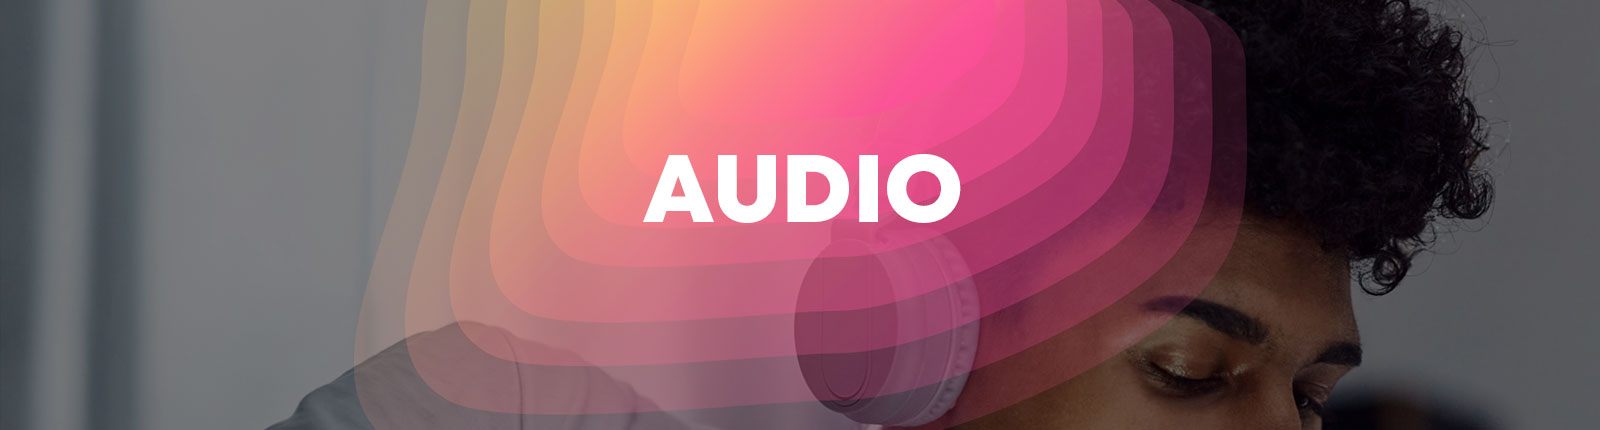 audio_header